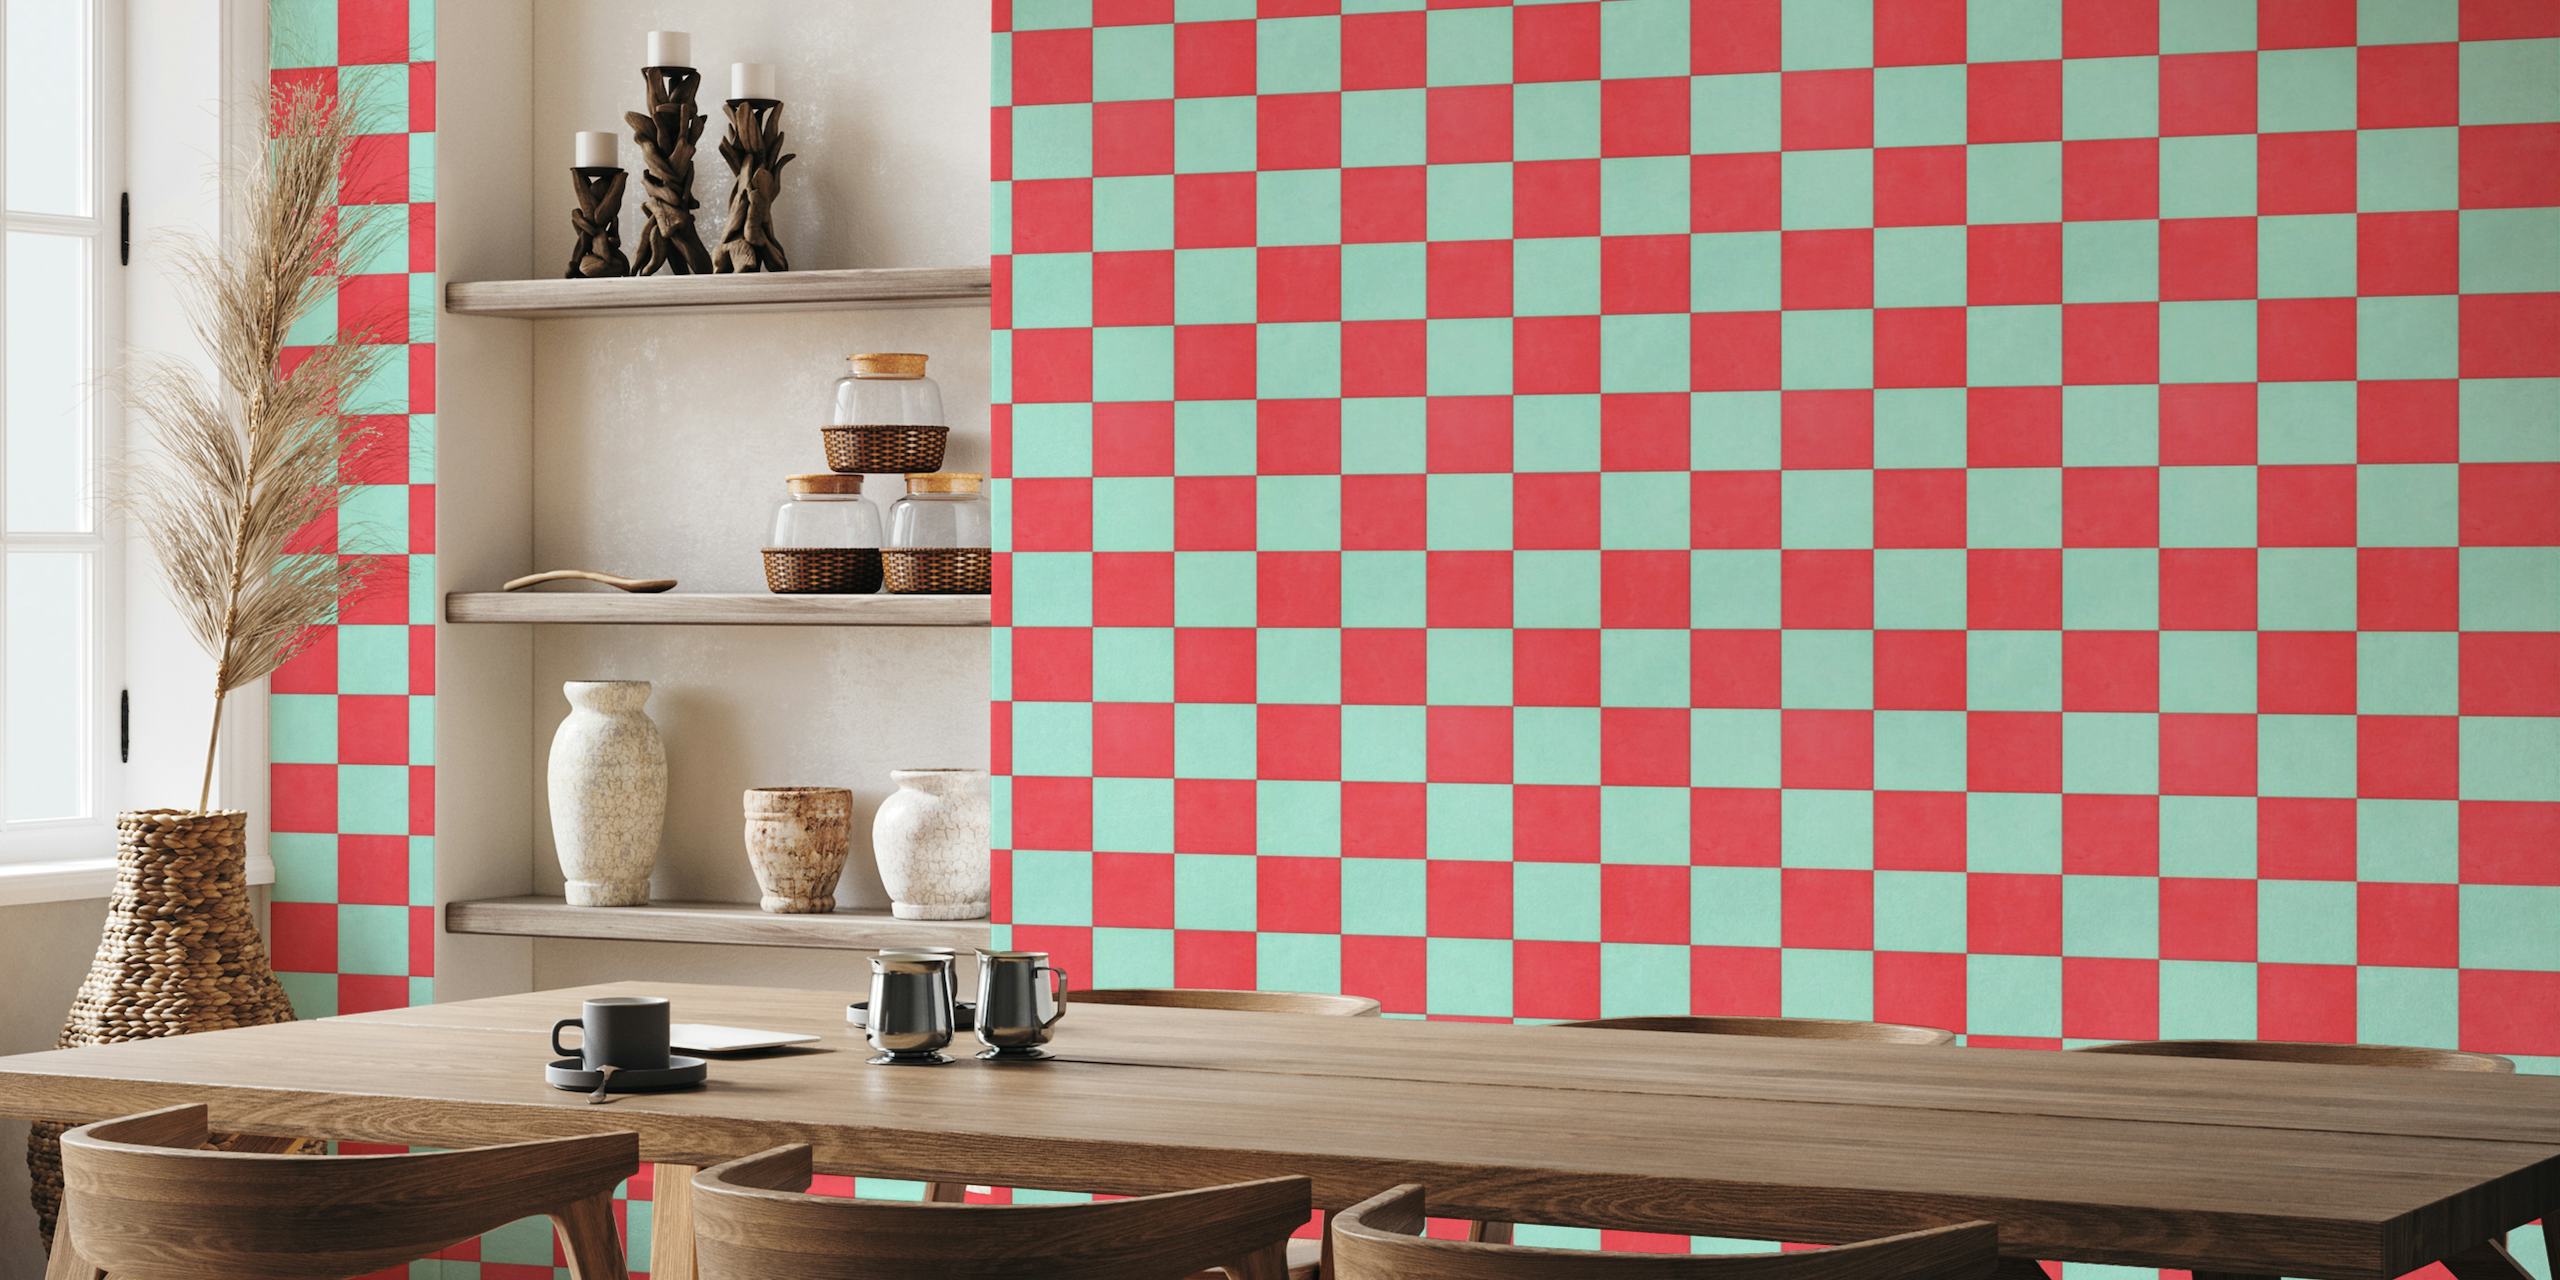 Fotomural vinílico de parede com padrão xadrez vermelho e aqua para interiores de casas e empresas